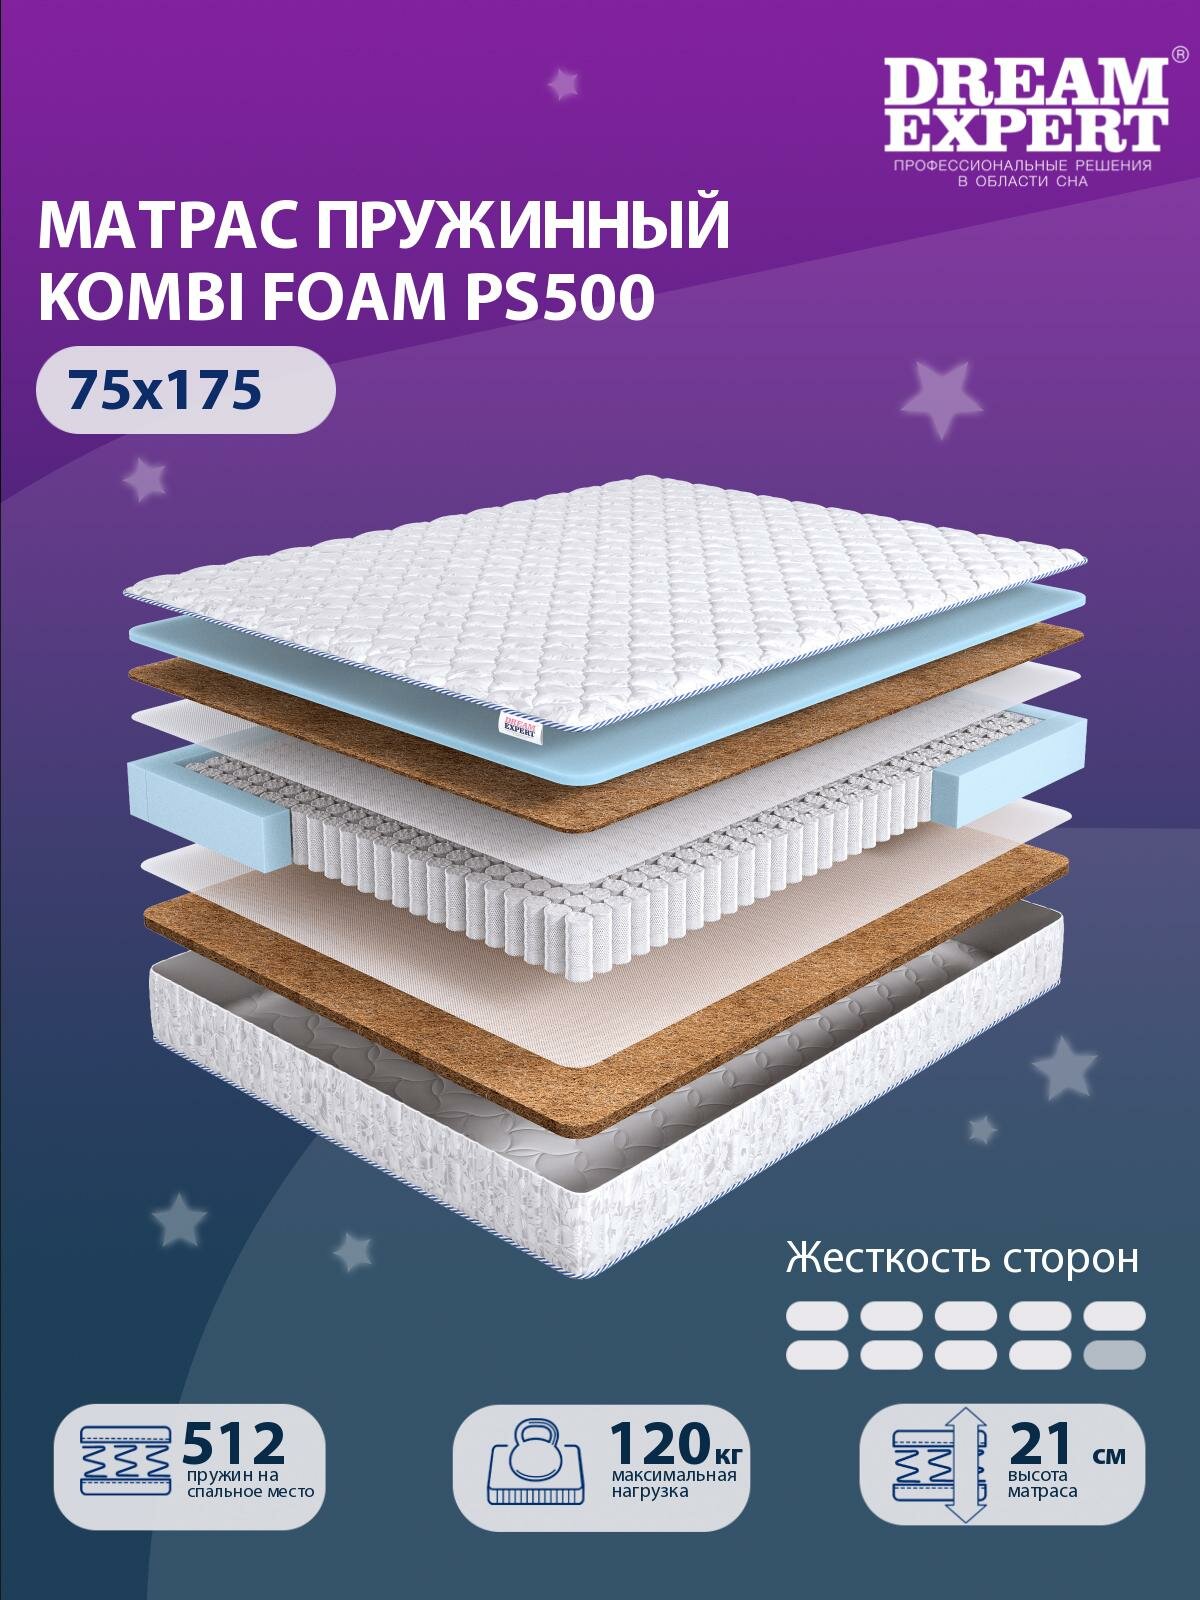 Матрас DreamExpert Kombi Foam PS500 жесткость высокая и выше средней, детский, независимый пружинный блок, на кровать 75x175